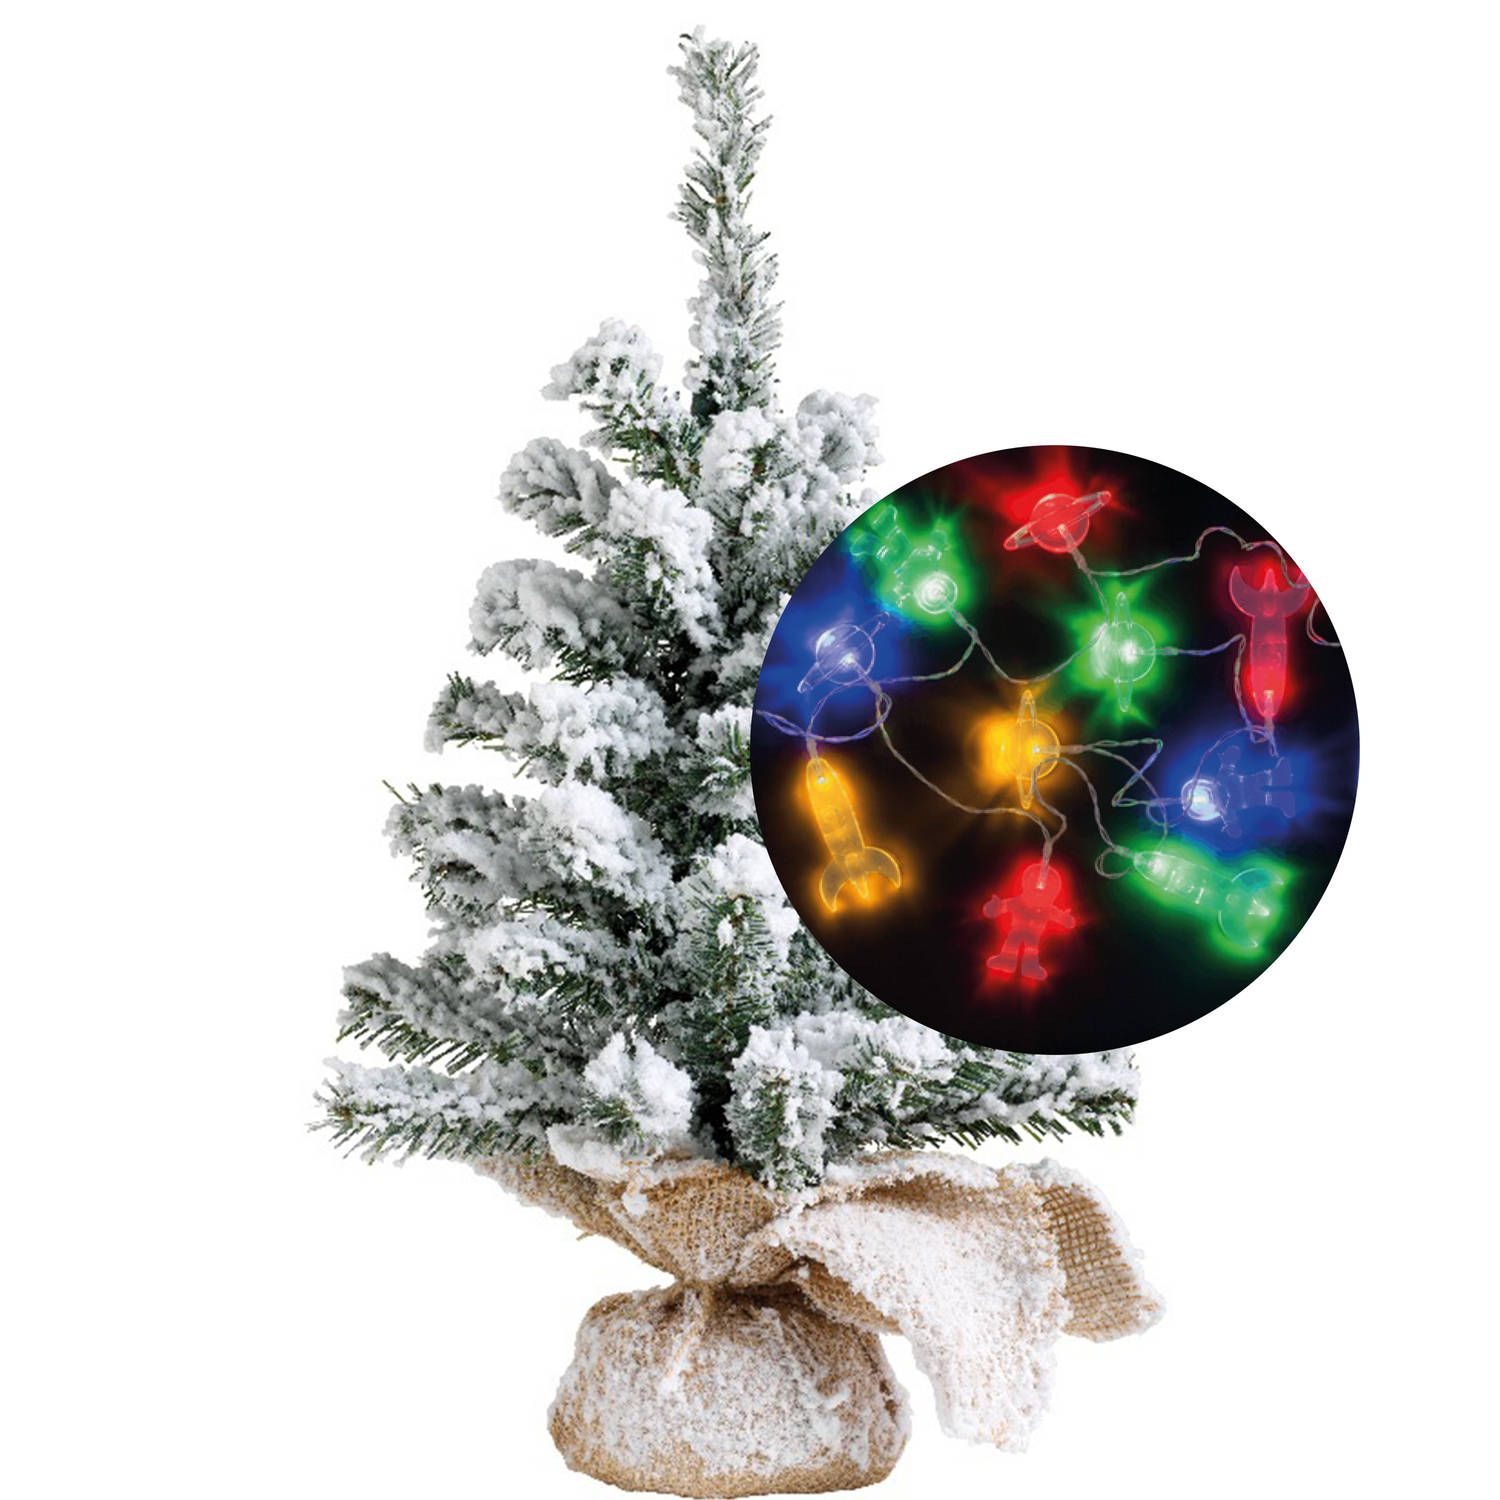 Kerstboom sneeuw 45 cm incl. ruimte-space verlichting snoer 165 cm Kunstkerstboom